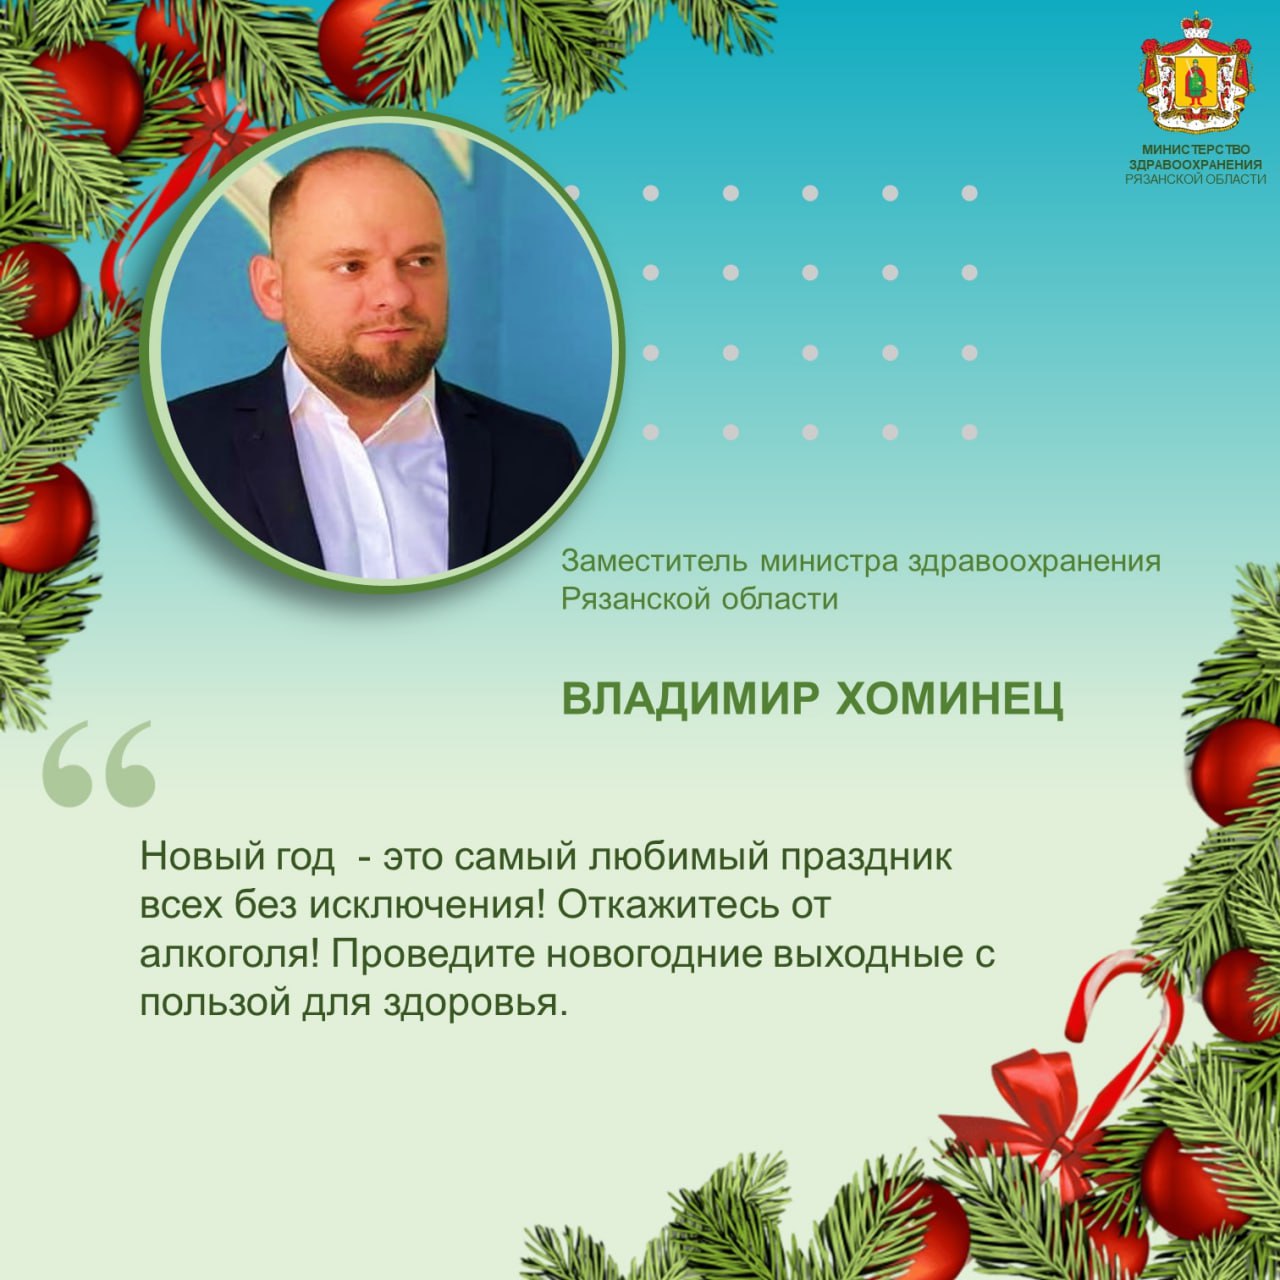 Обращения  заместителя министра здравоохранения Рязанской области